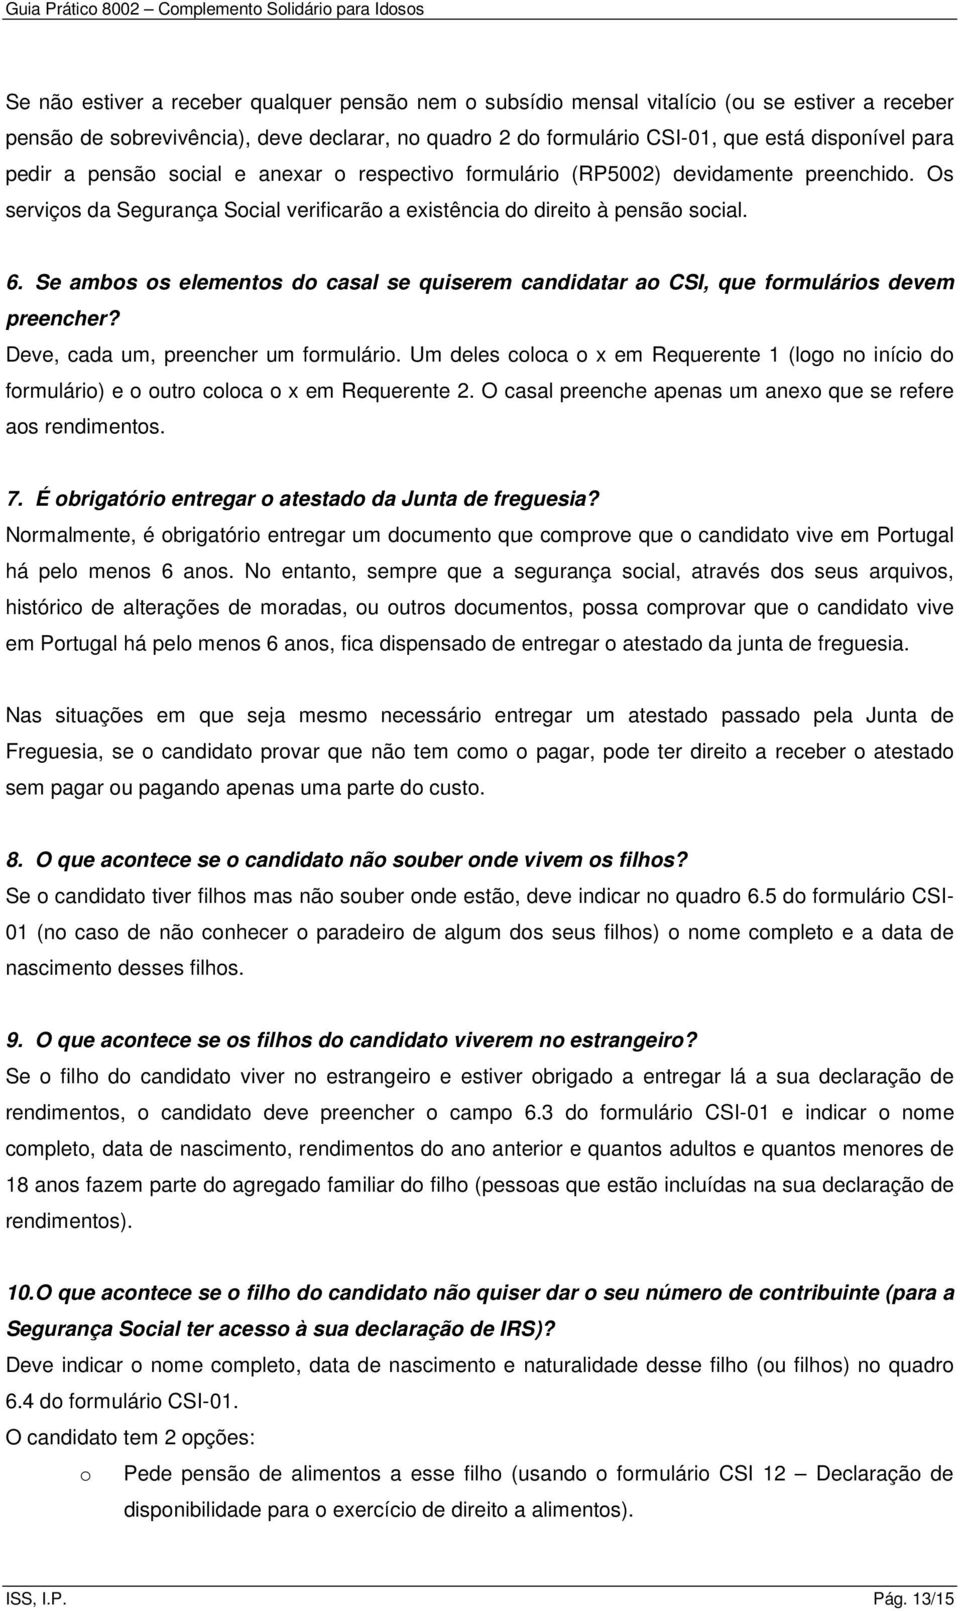 GUIA PRÁTICO COMPLEMENTO SOLIDÁRIO PARA IDOSOS - PDF Download grátis